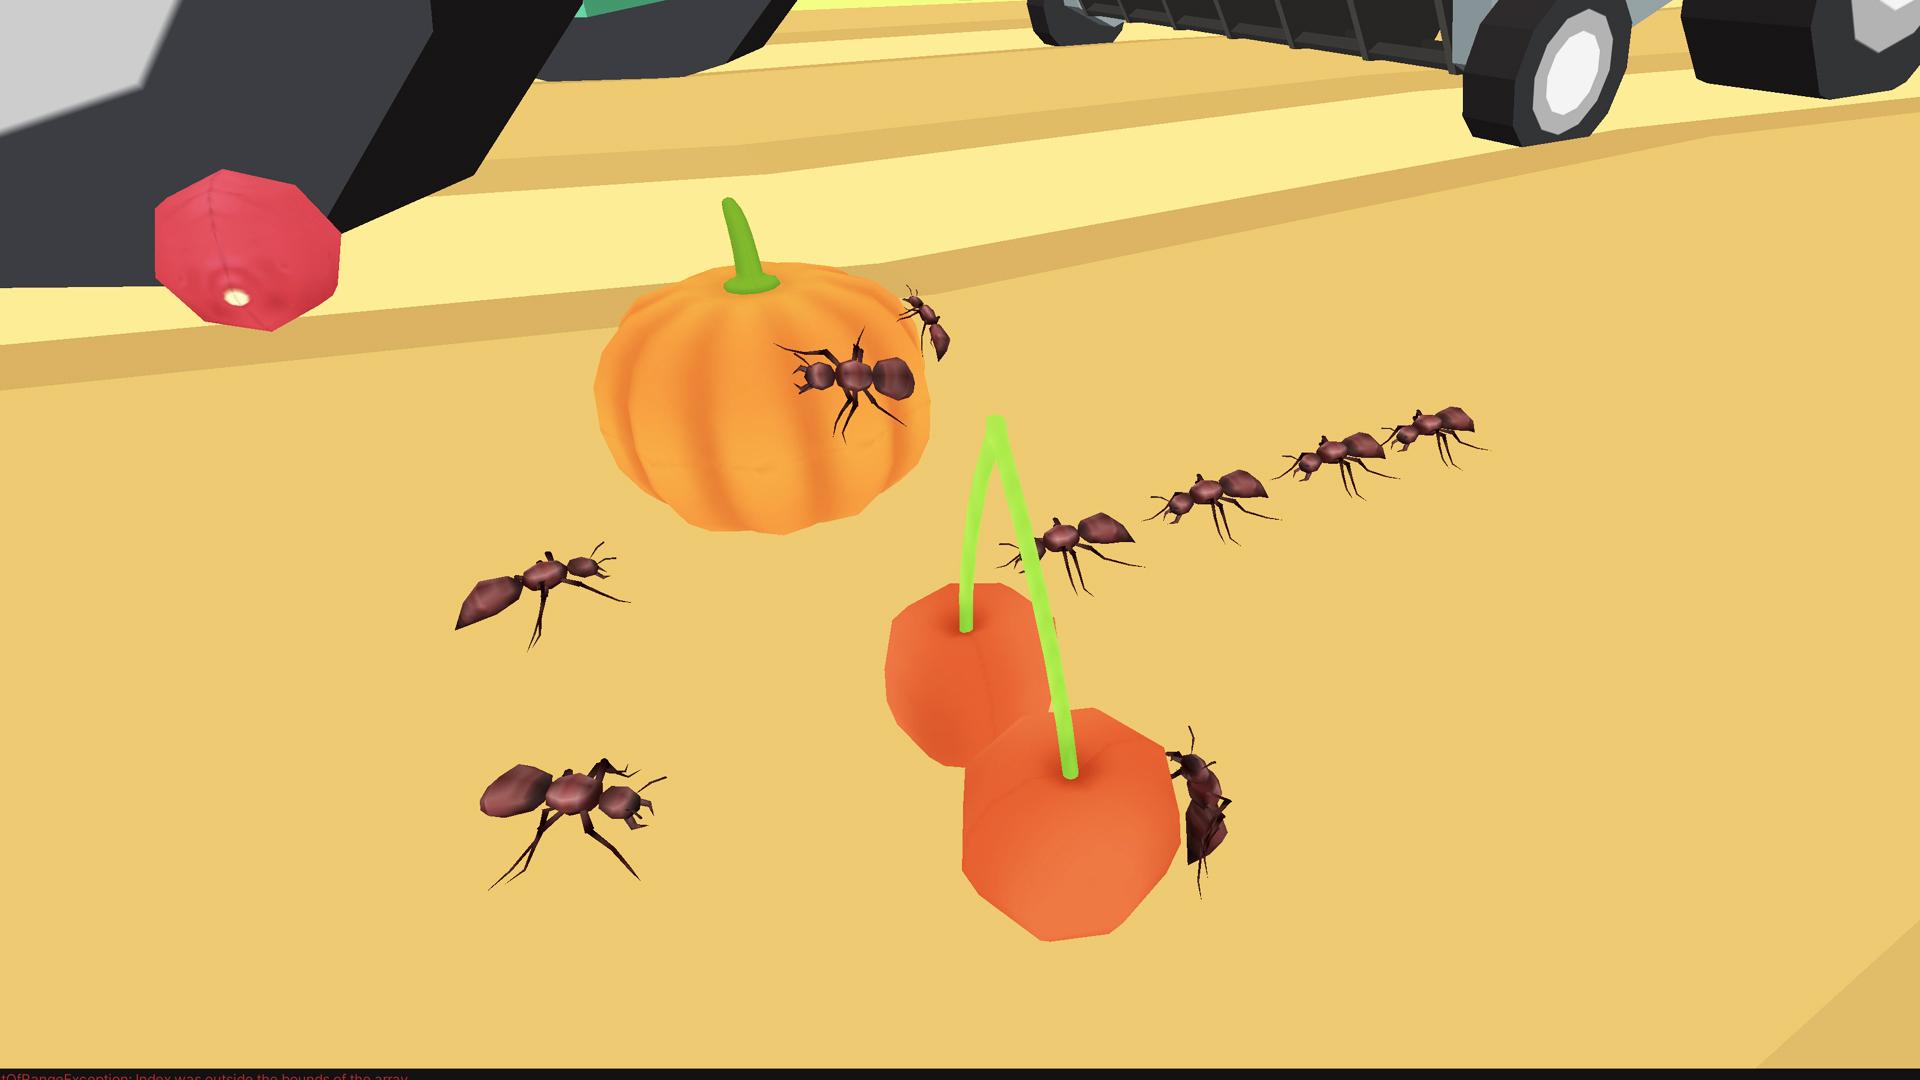 Ant Colony игра. Квест муравей игра. The Ants игра на андроид. Игра про муравьев на андроид.